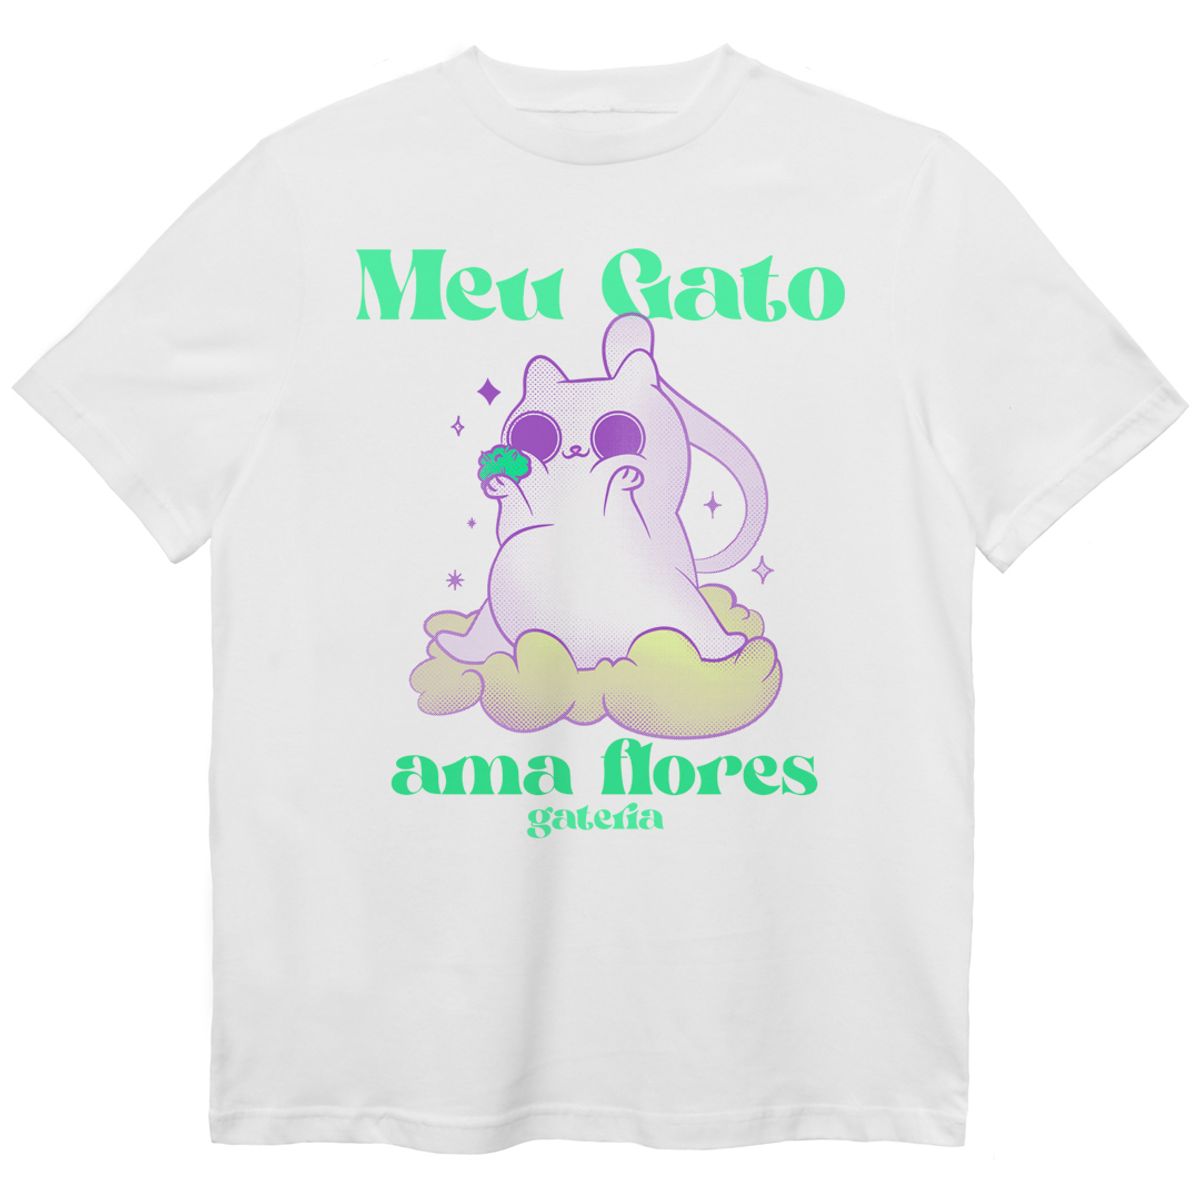 Nome do produto: Camiseta Meu Gato Ama Flores